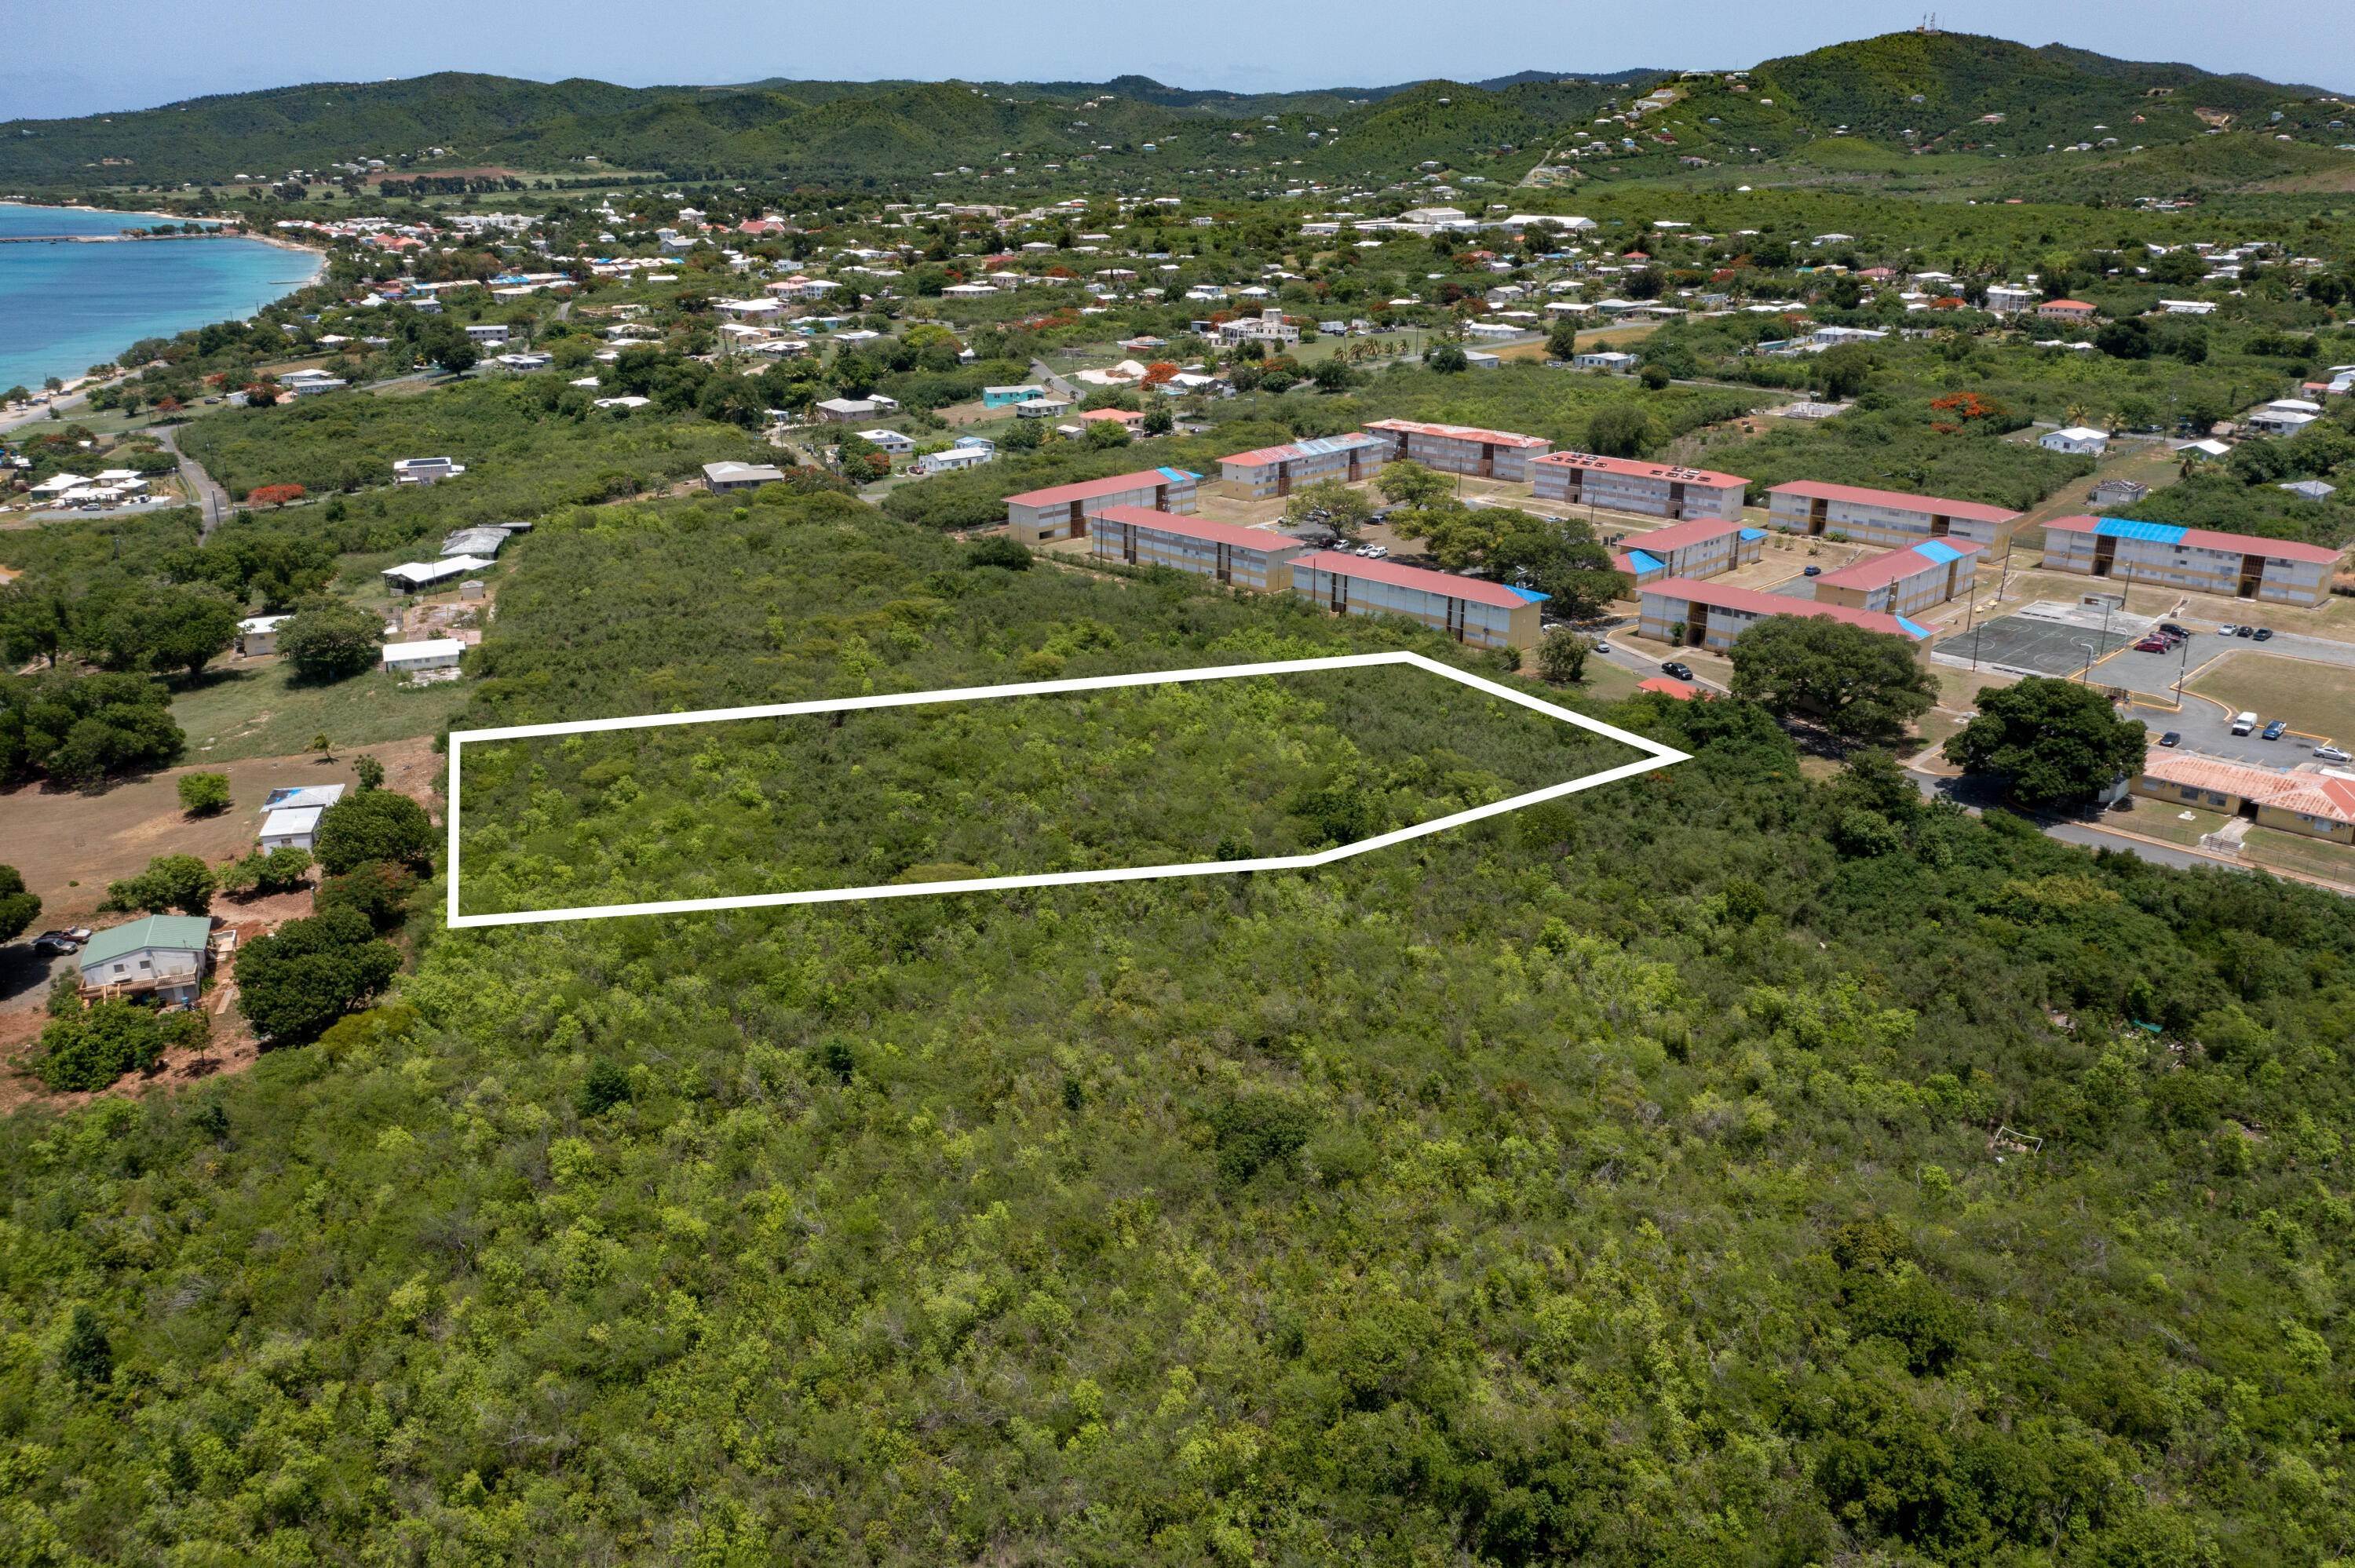 Land for Sale at 194 Hessenlberg WE St Croix, Virgin Islands 00840 United States Virgin Islands